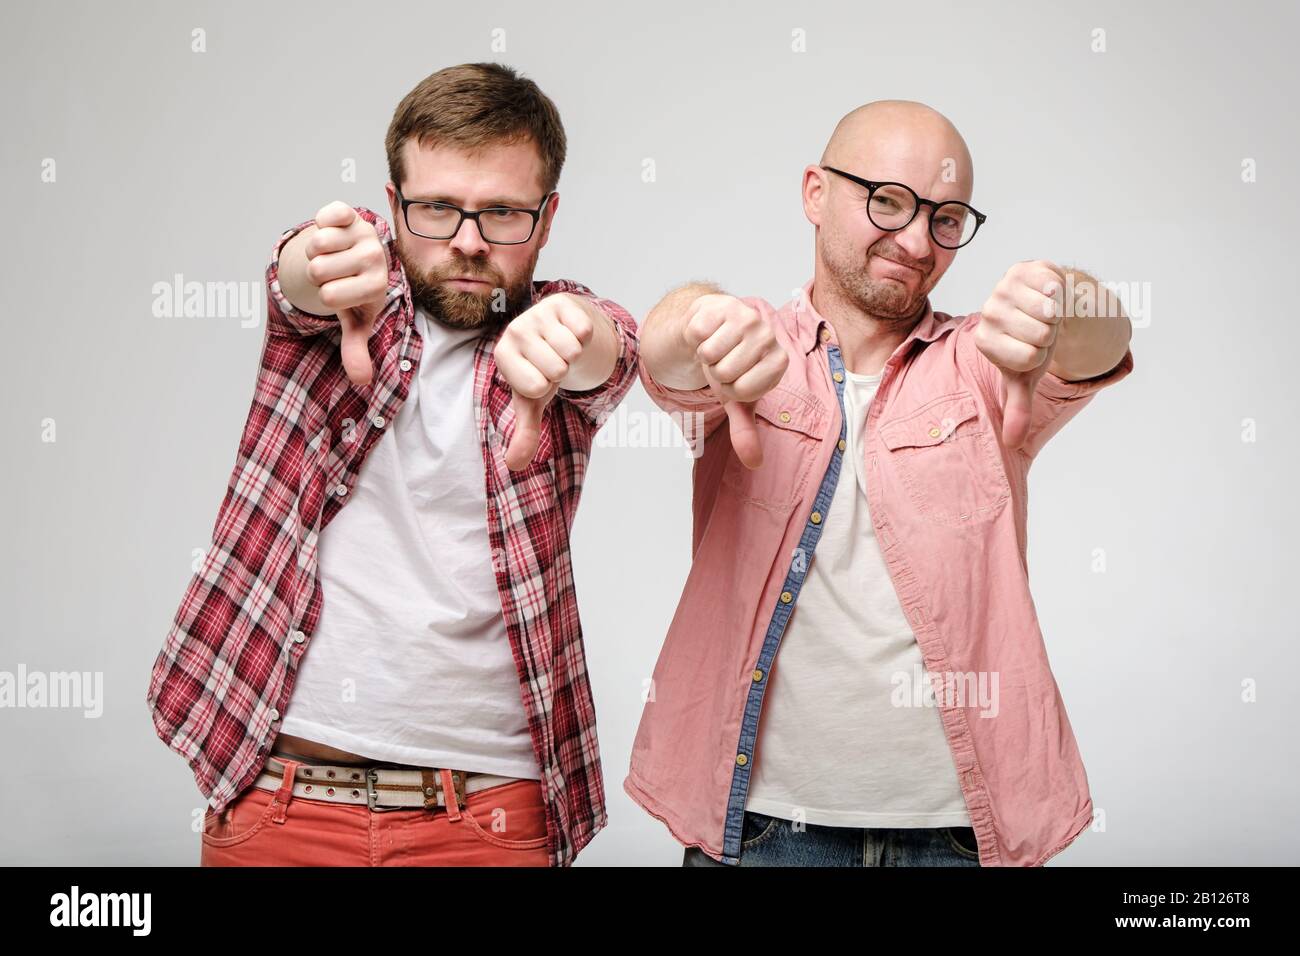 Zwei Männer, die ein schlechtes Zeichen und eine Abneigung zeigen, machen eine Geste mit Daumen nach unten, mit einem grimace der Missbilligung auf ihren Gesichtern. Stockfoto